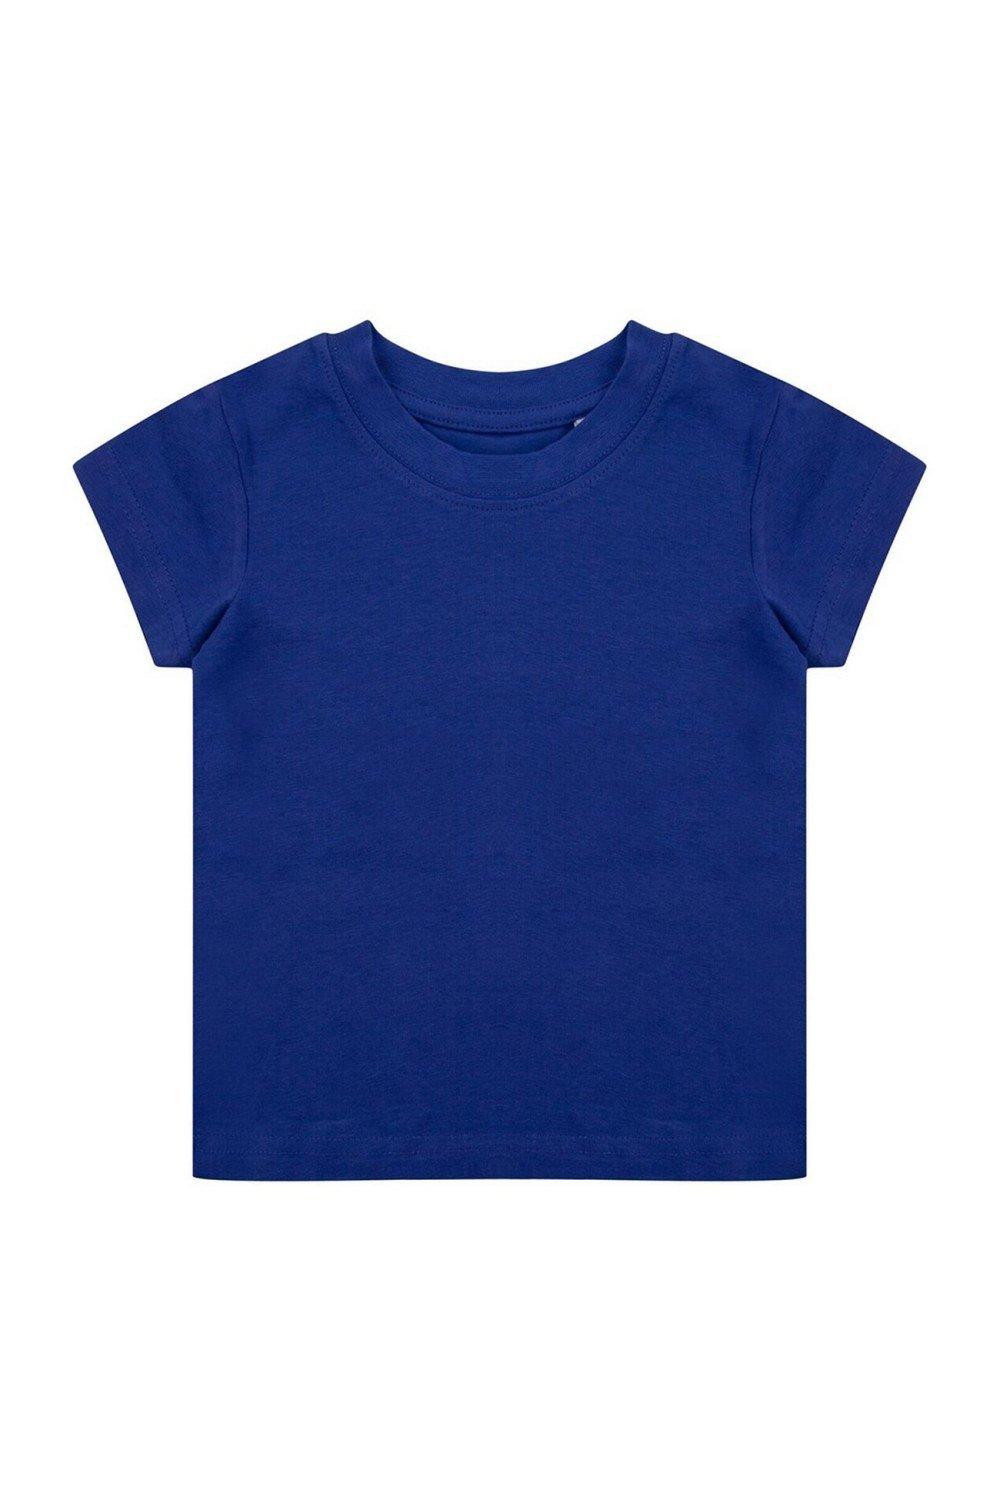 комплект одежды пижама для новорожденного 6 мес 62 68 см Органическая футболка Larkwood, синий